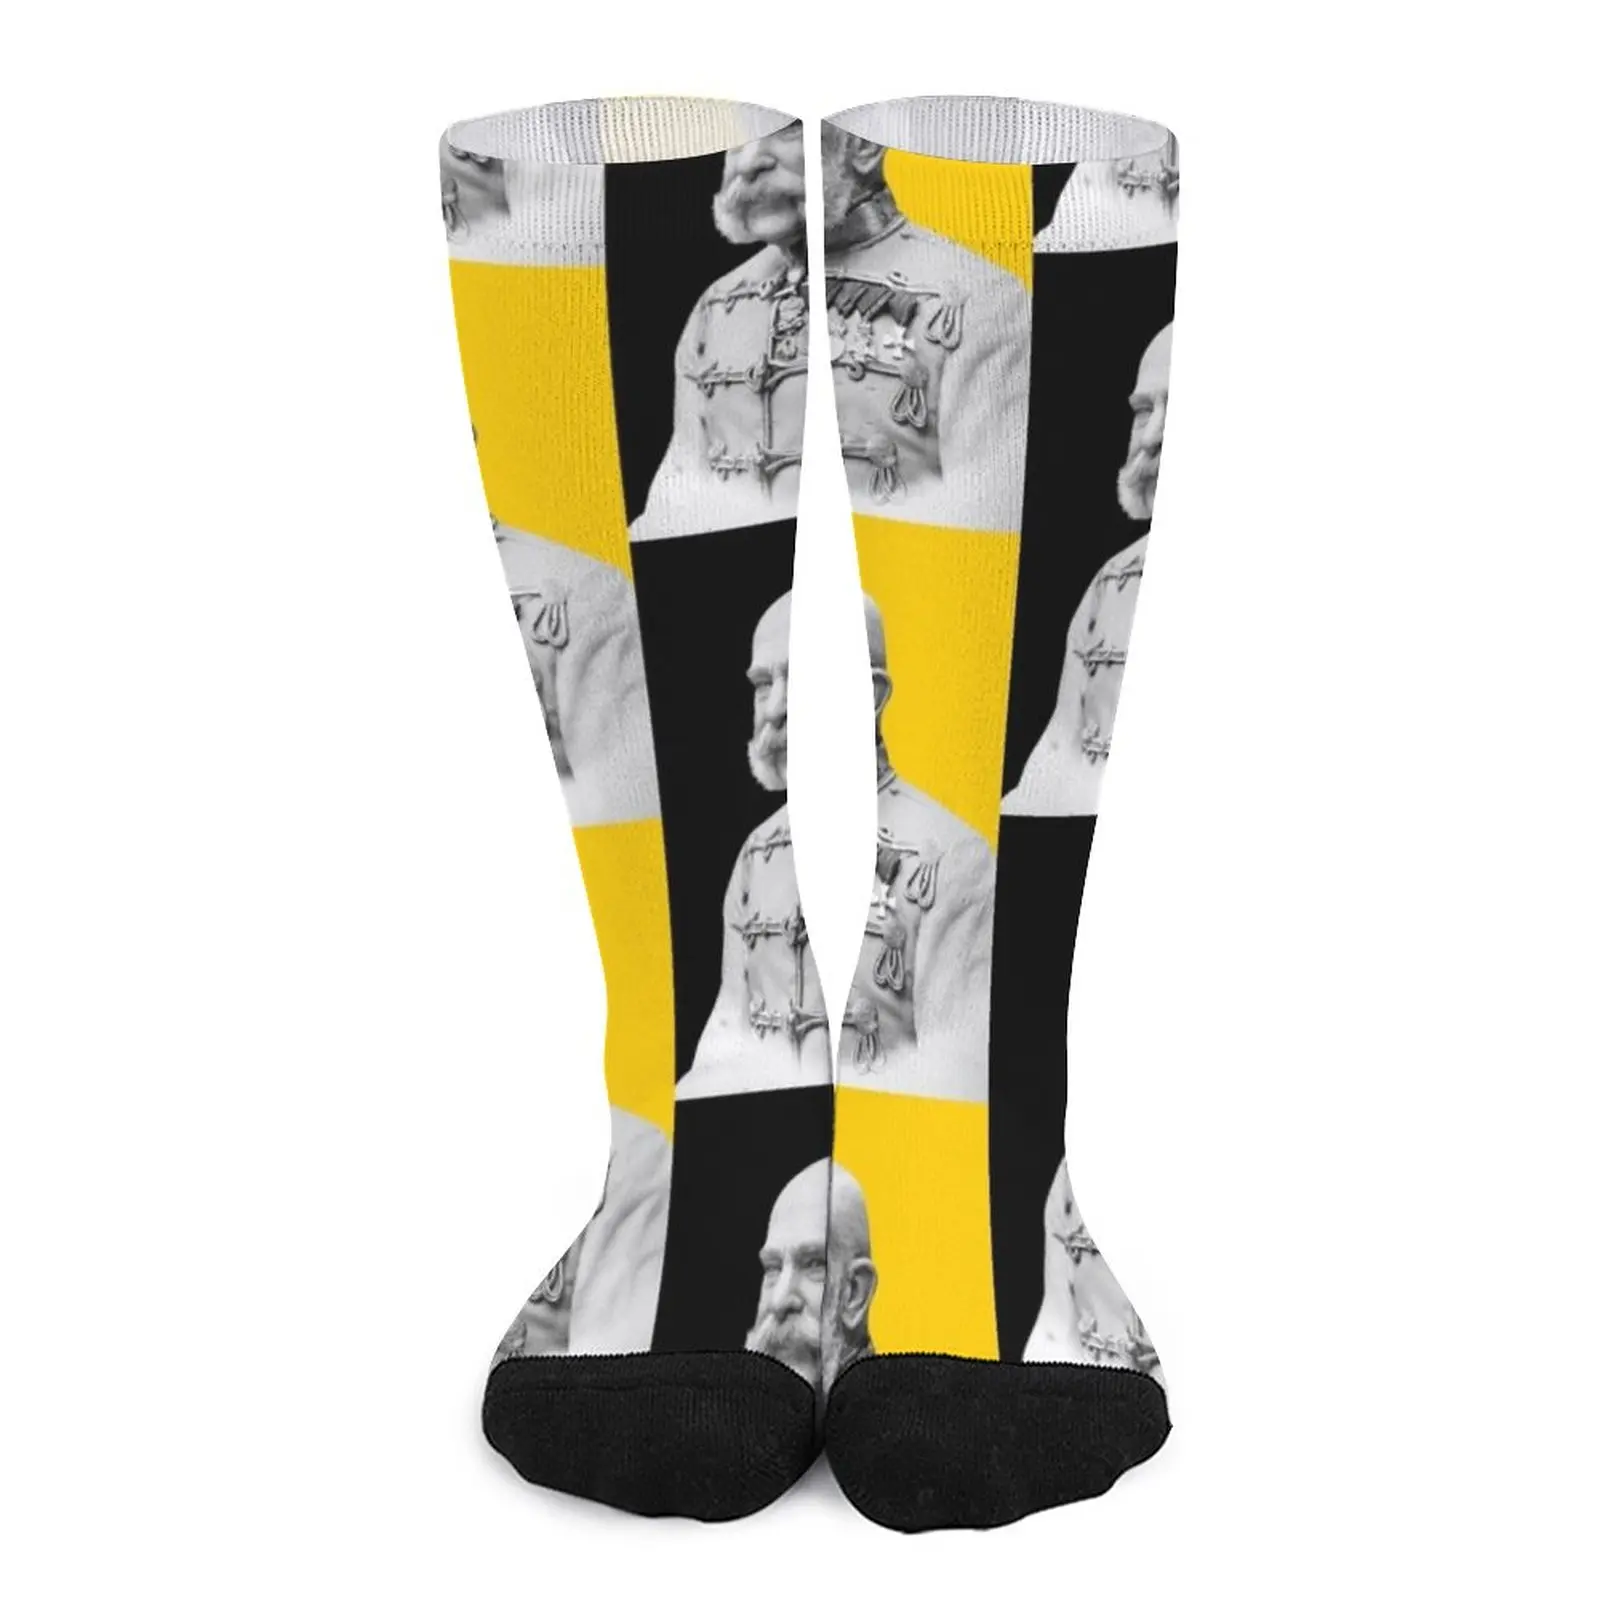 Franz Joseph I of Austria with Flag Socks Crossfit socks heated socks flag of brazil brazilian flag socks hiking short socks socks for man women s